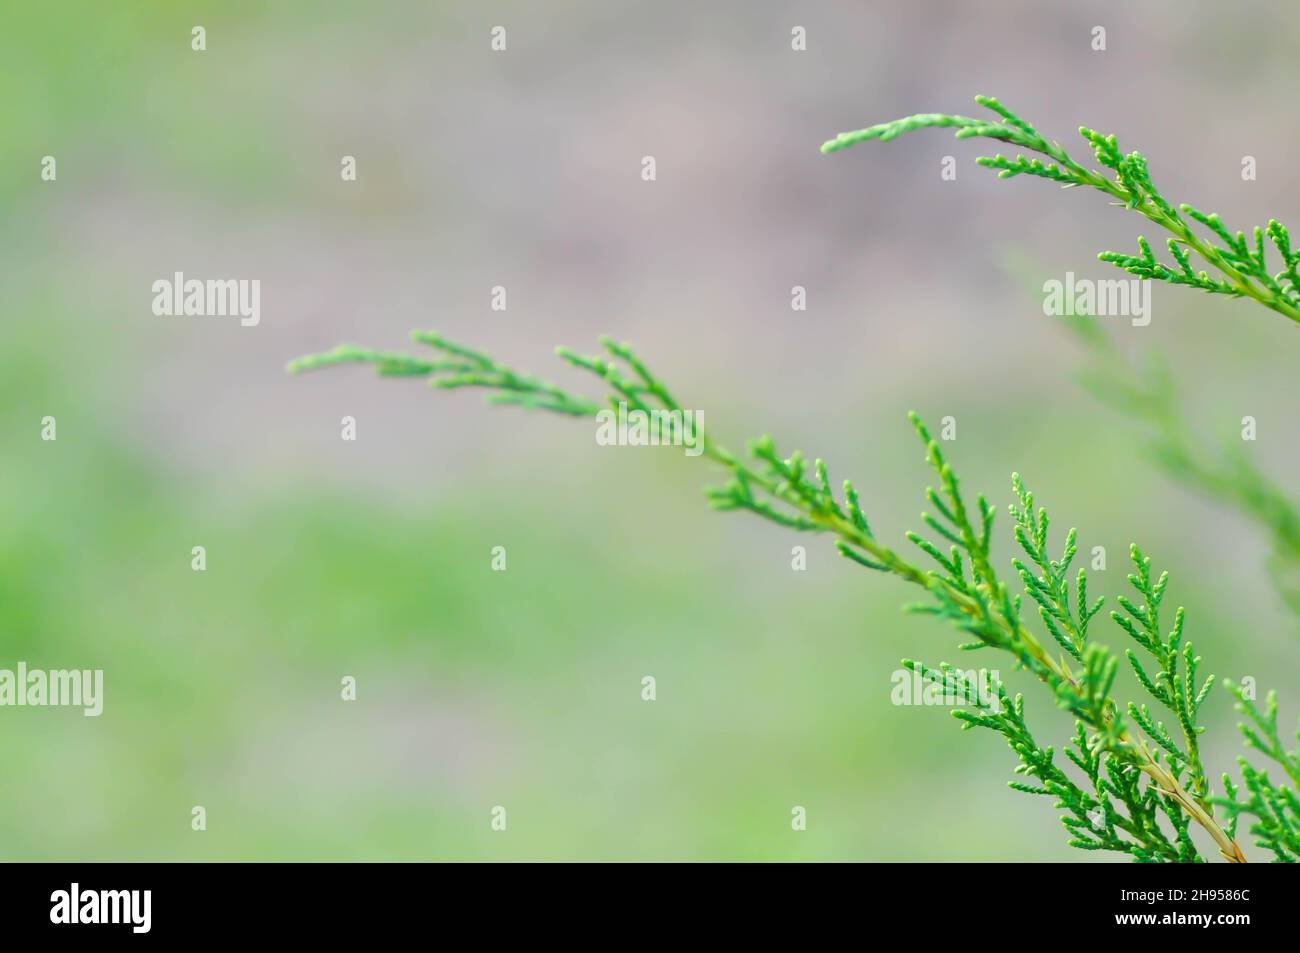 Juniperus chinensis, Chinese juniper or CUPRESSACEAE plant Stock Photo